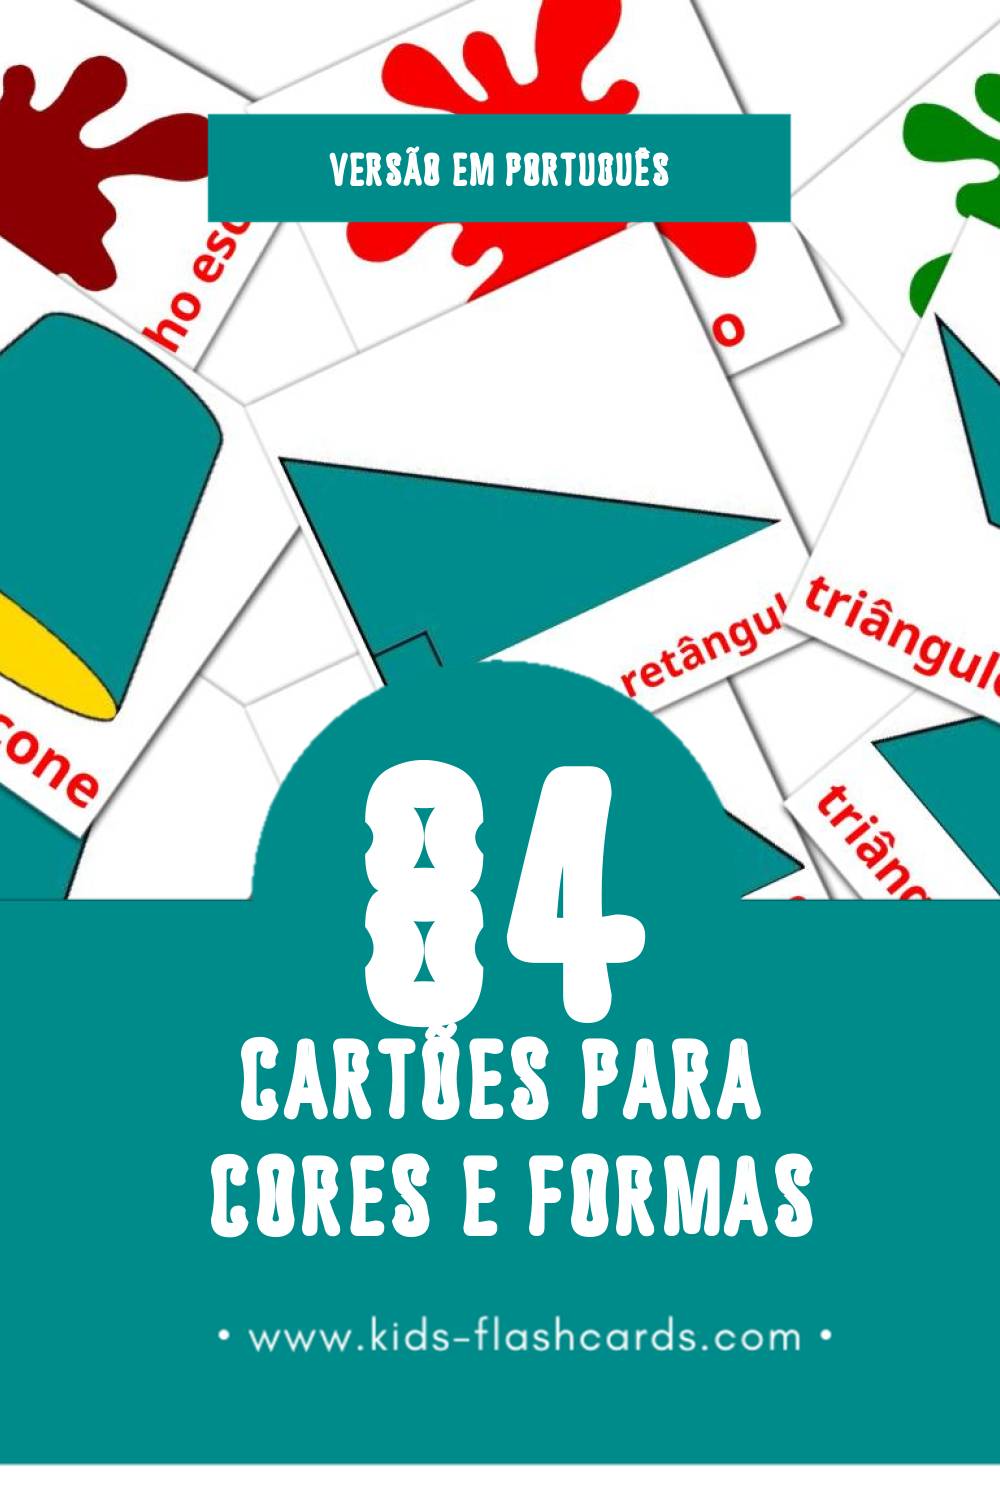 Flashcards de Cores e formas Visuais para Toddlers (84 cartões em Português)